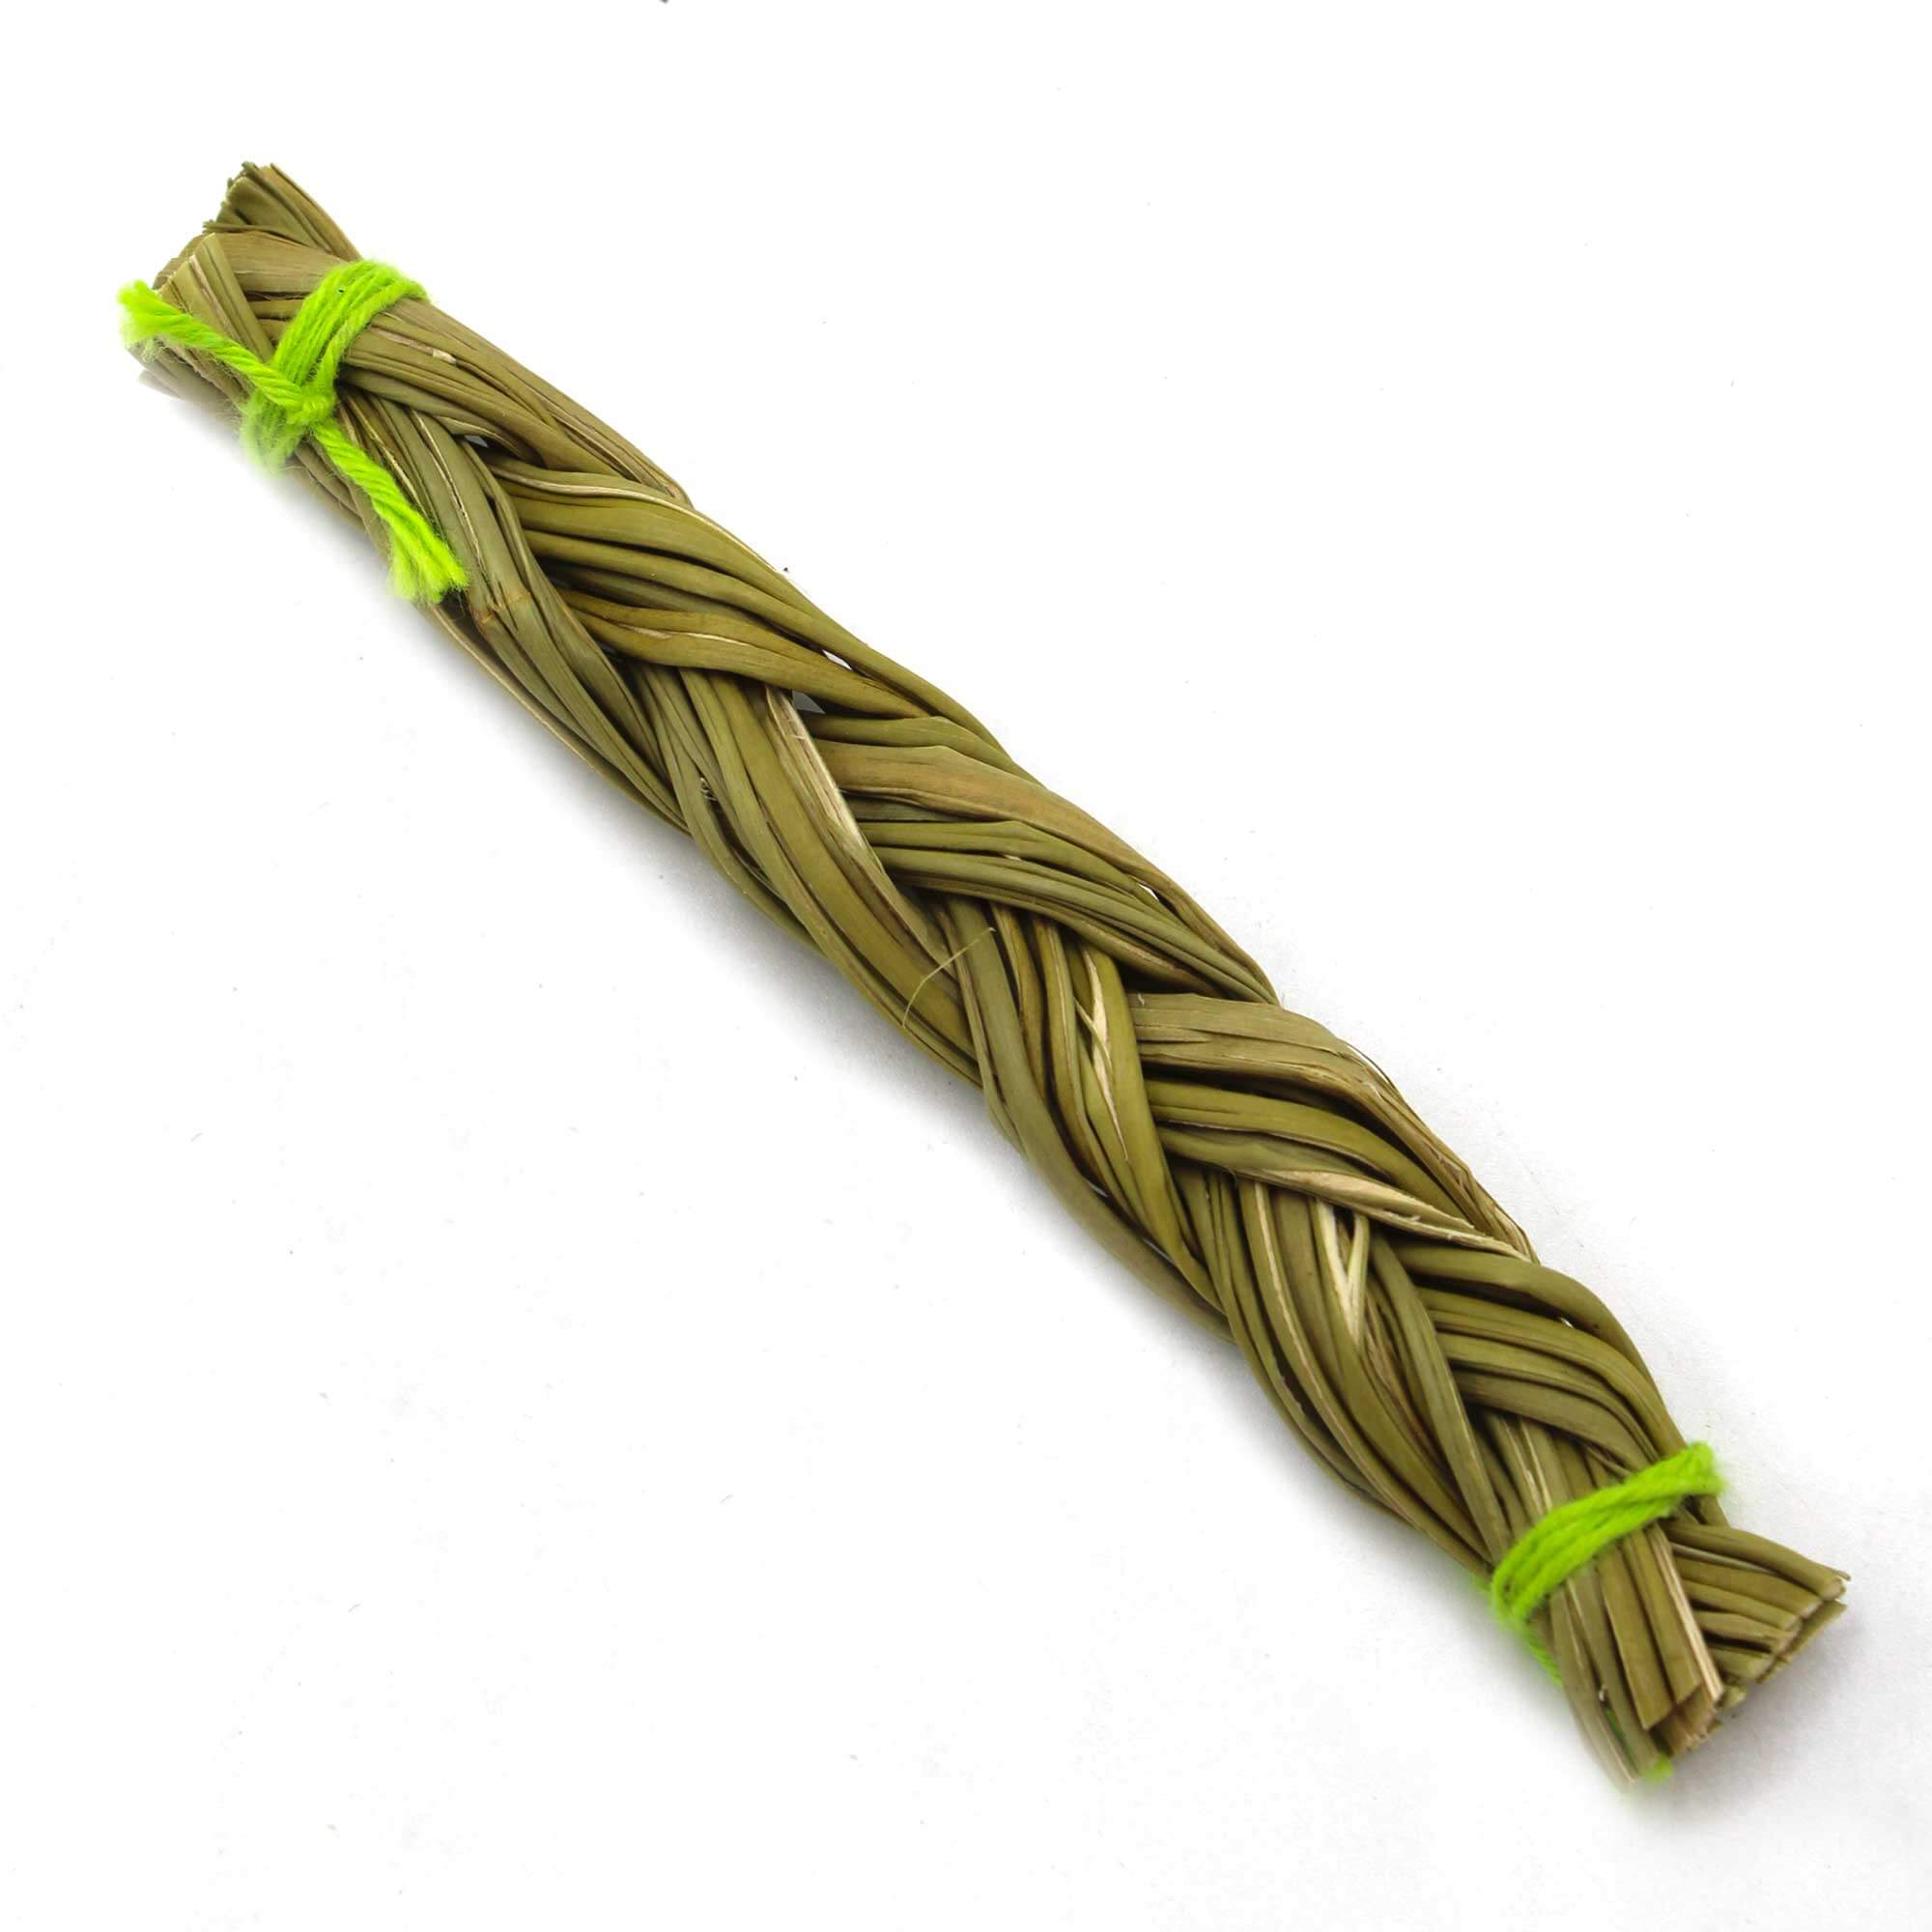 Sweetgrass növényi füstölő - kicsi illatos szentperje köteg, 10 cm